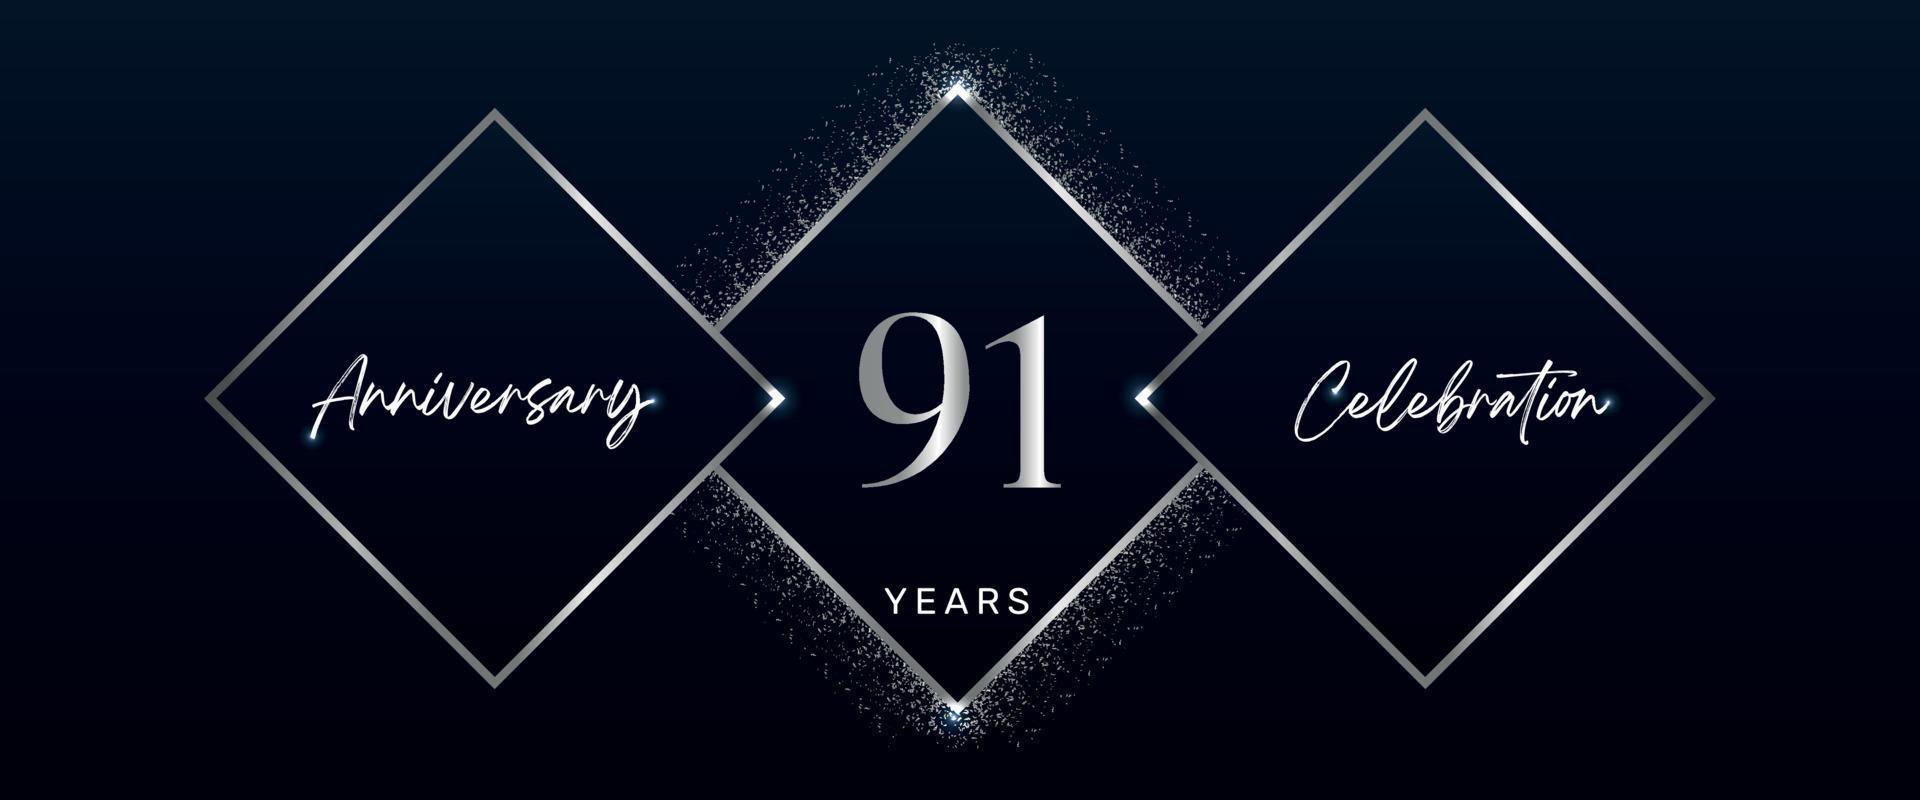 Logotipo de celebración de aniversario de 91 años. diseño vectorial para eventos de celebración de aniversario, fiesta de cumpleaños, tarjeta de felicitación, boda, tarjeta de invitación. vector de diseño de plantilla de aniversario de 91 años